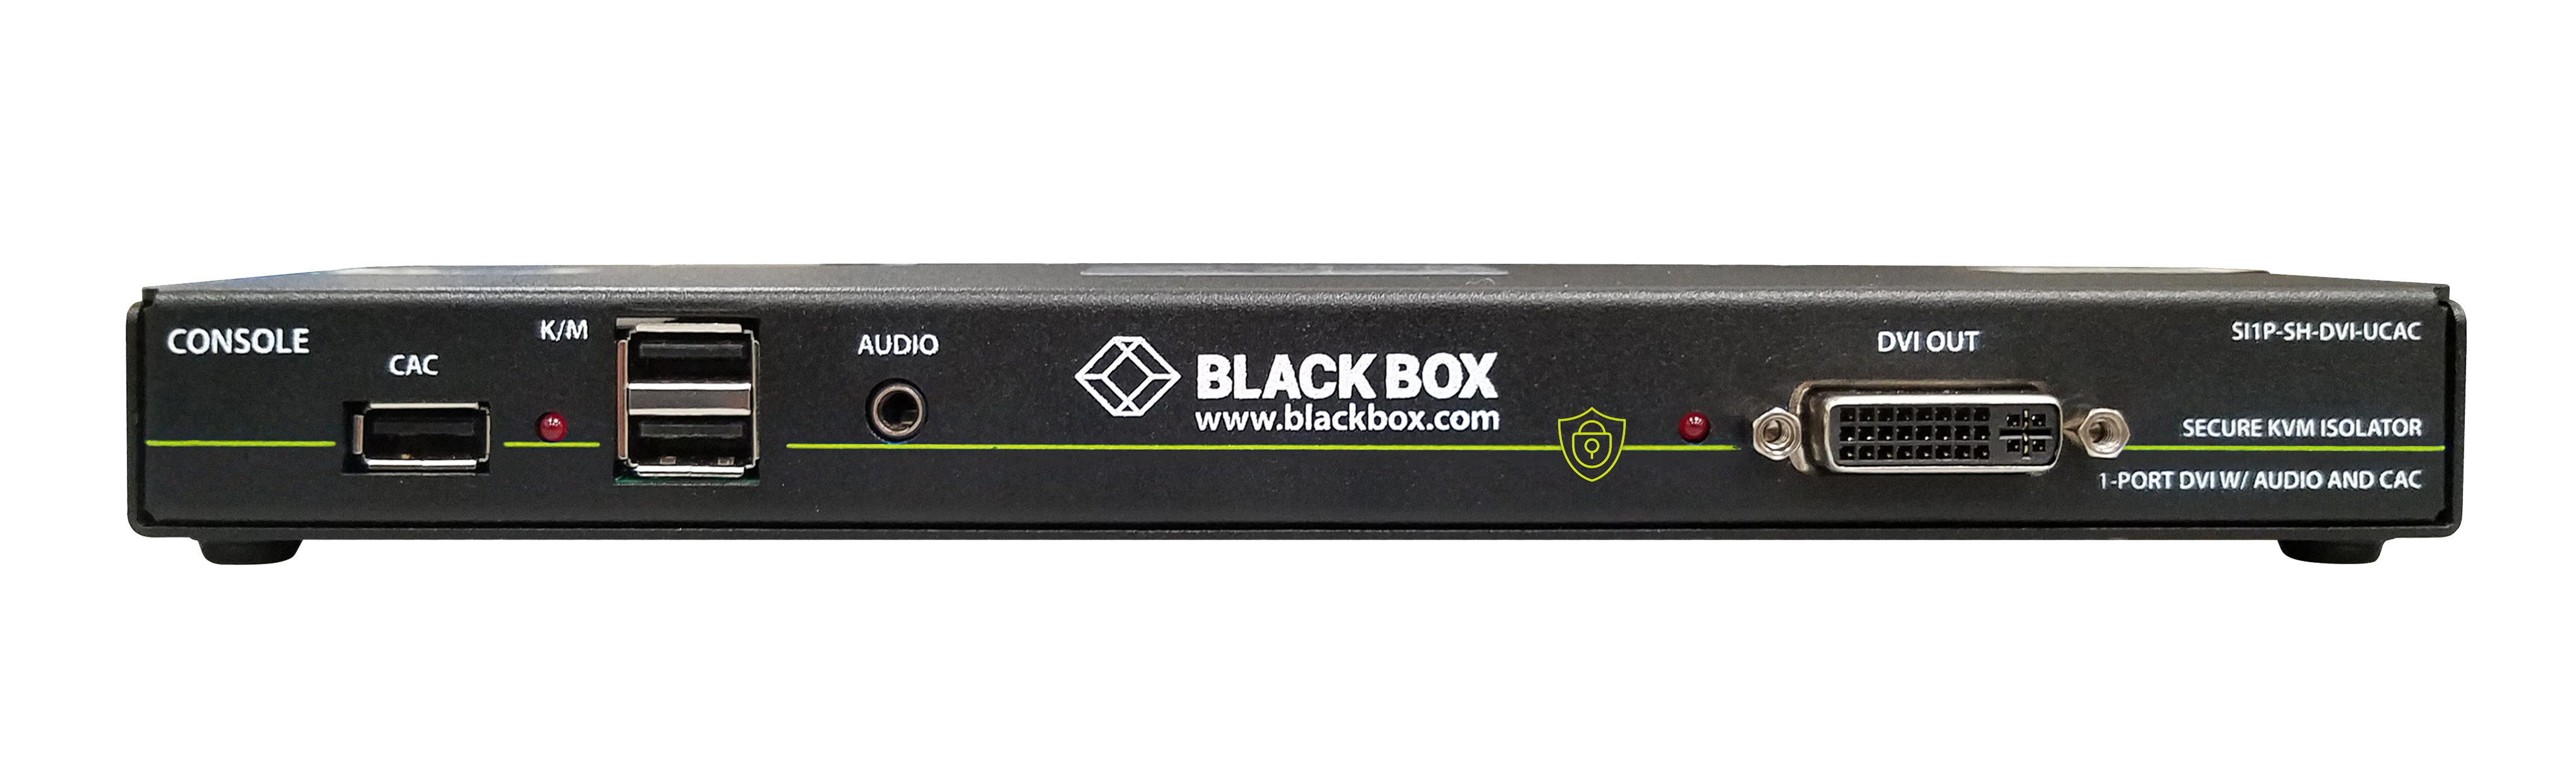 Black Box_Secure KVM Defender_SI1P-SH-DVI-UCAC_Front_1905